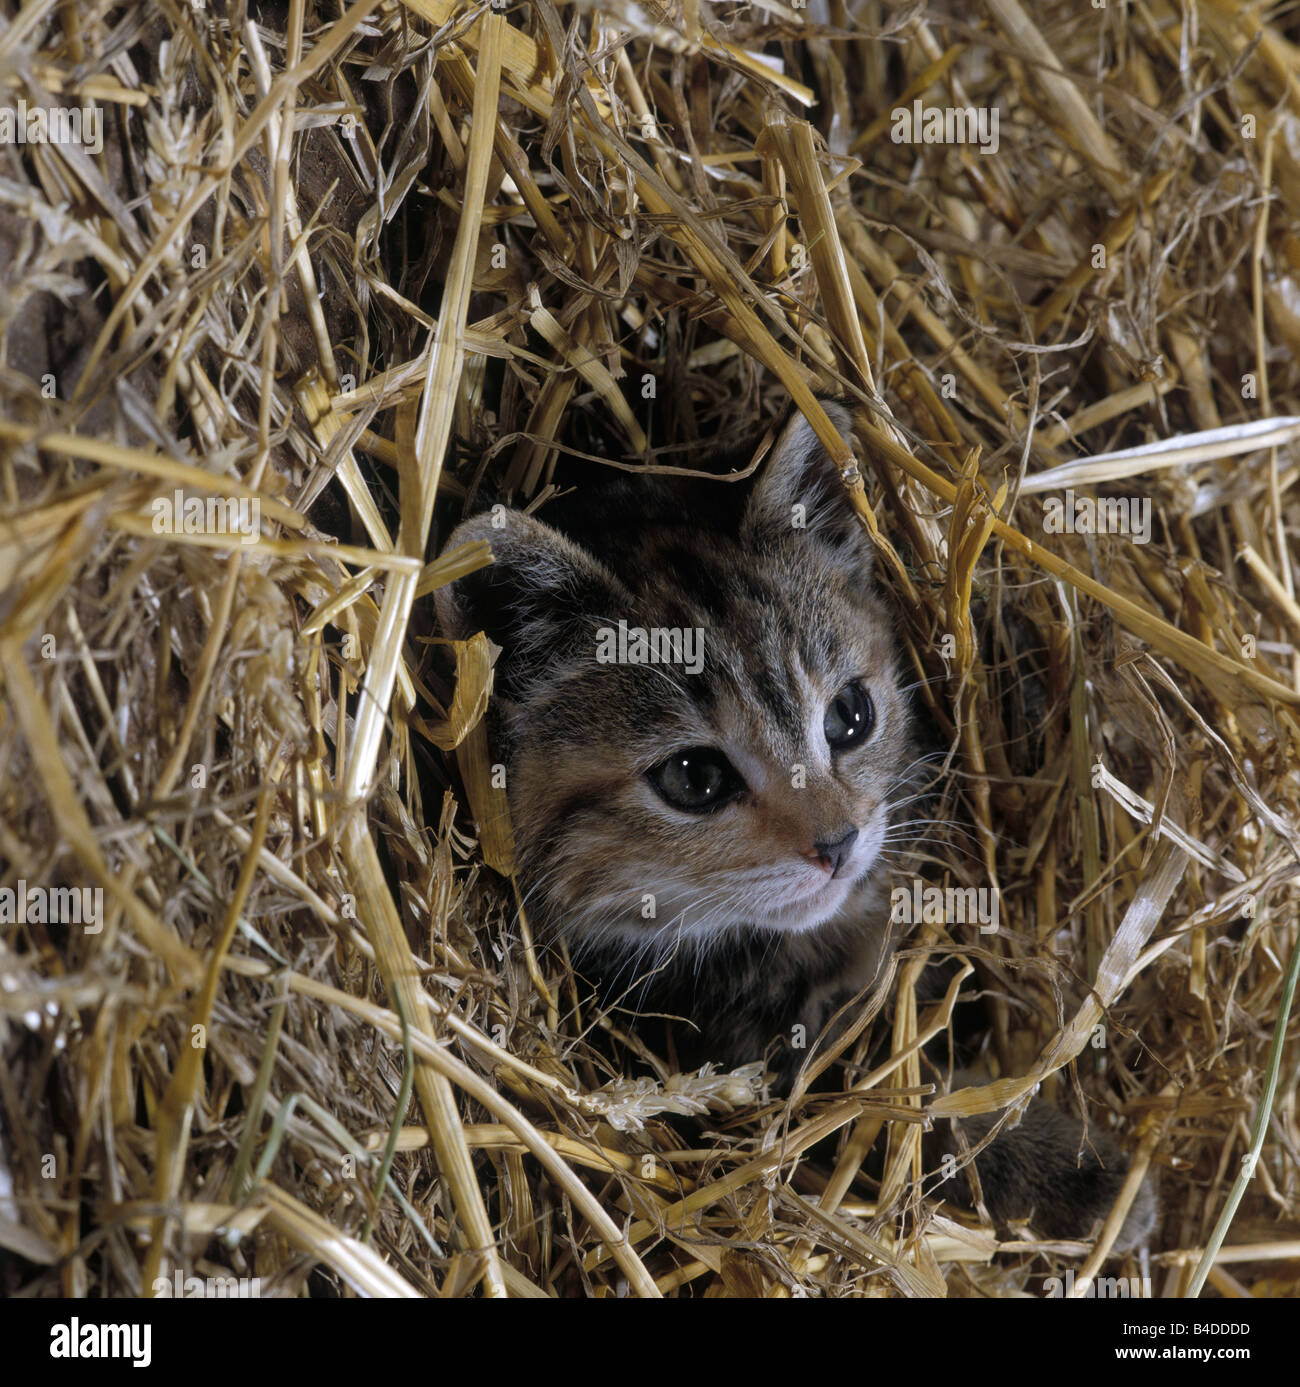 https://c8.alamy.com/comp/B4DDDD/cat-tabby-farm-kitten-playing-in-straw-B4DDDD.jpg